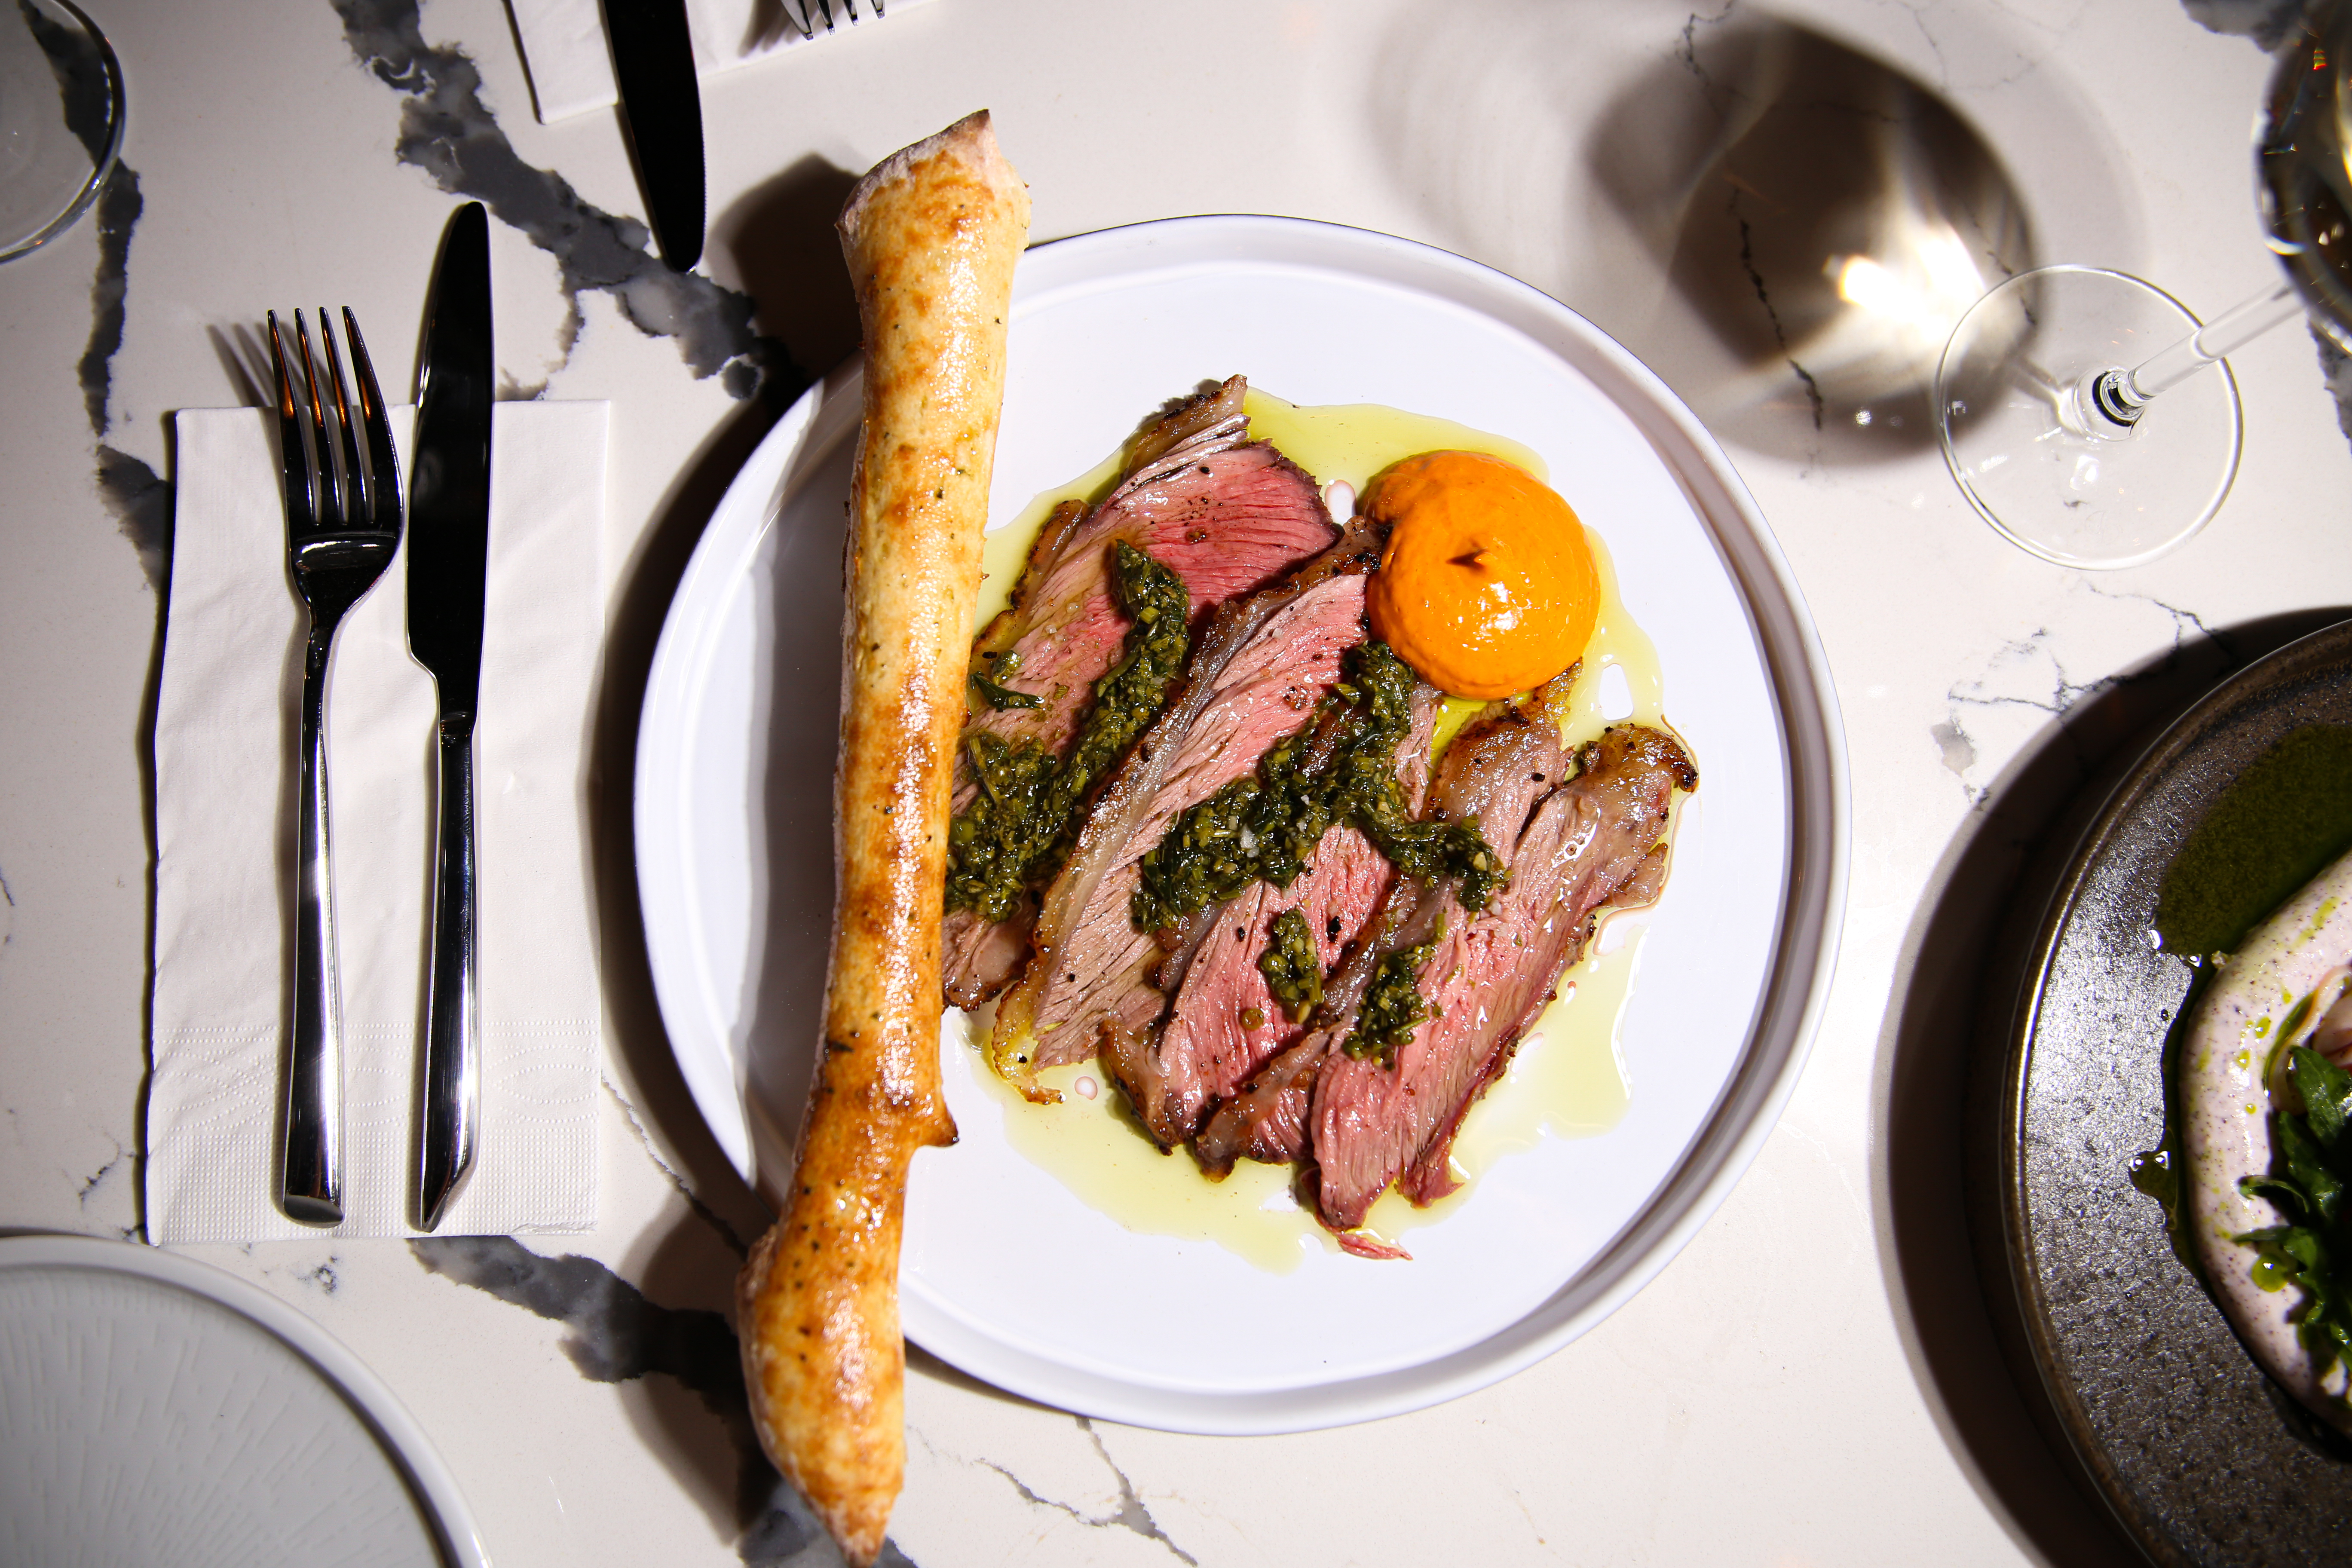 מנת בשר מוגשת על צלחת לבנה בליווי מאפה במסעדת השף בצפון ל'אוסטריה